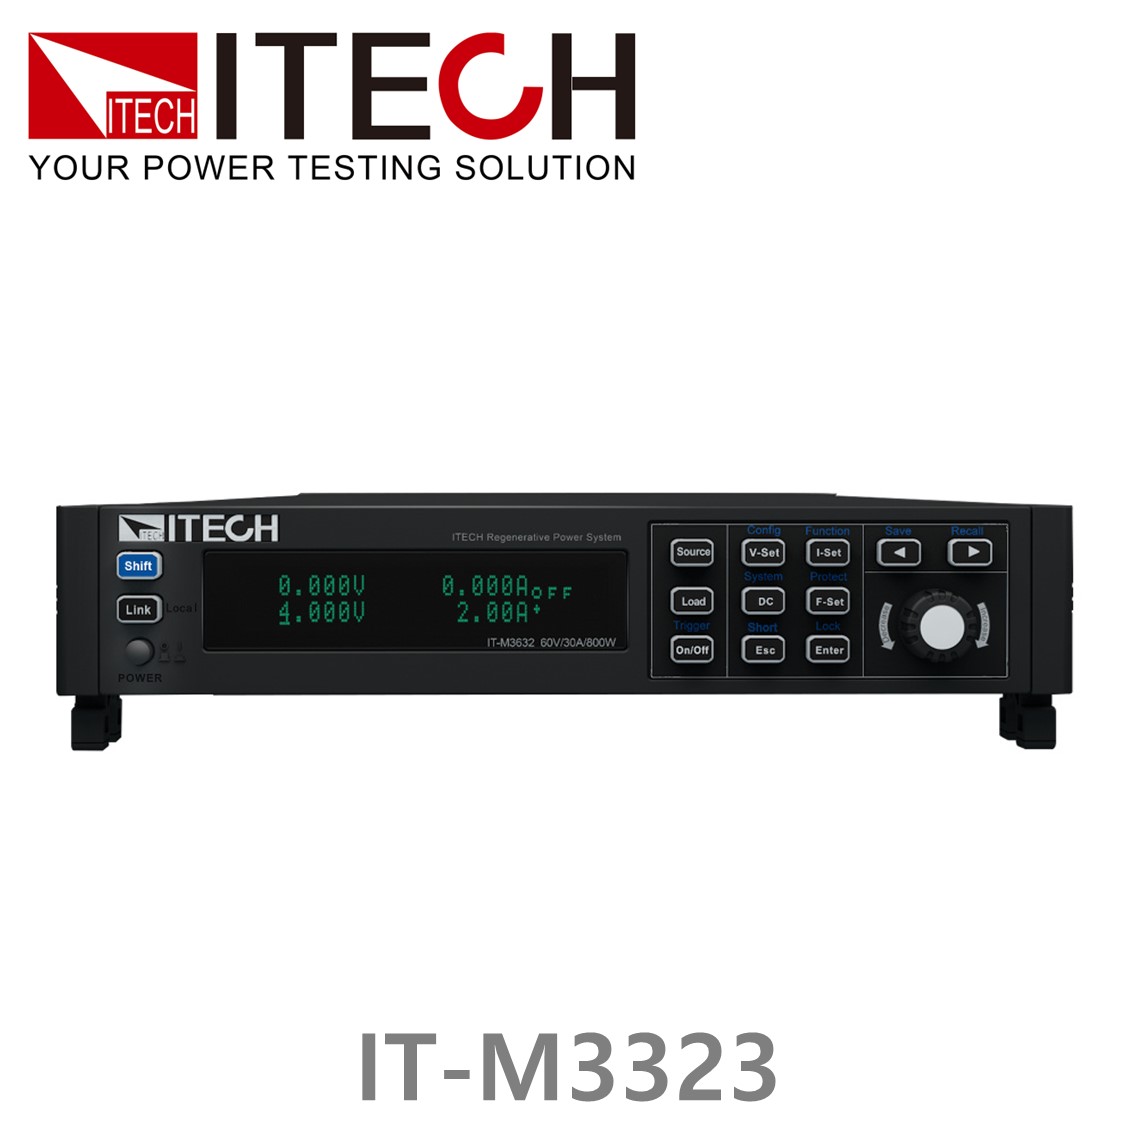 [ ITECH ] IT-M3323 DC전자부하기 ,(150V/12A/400W) DC전자로드